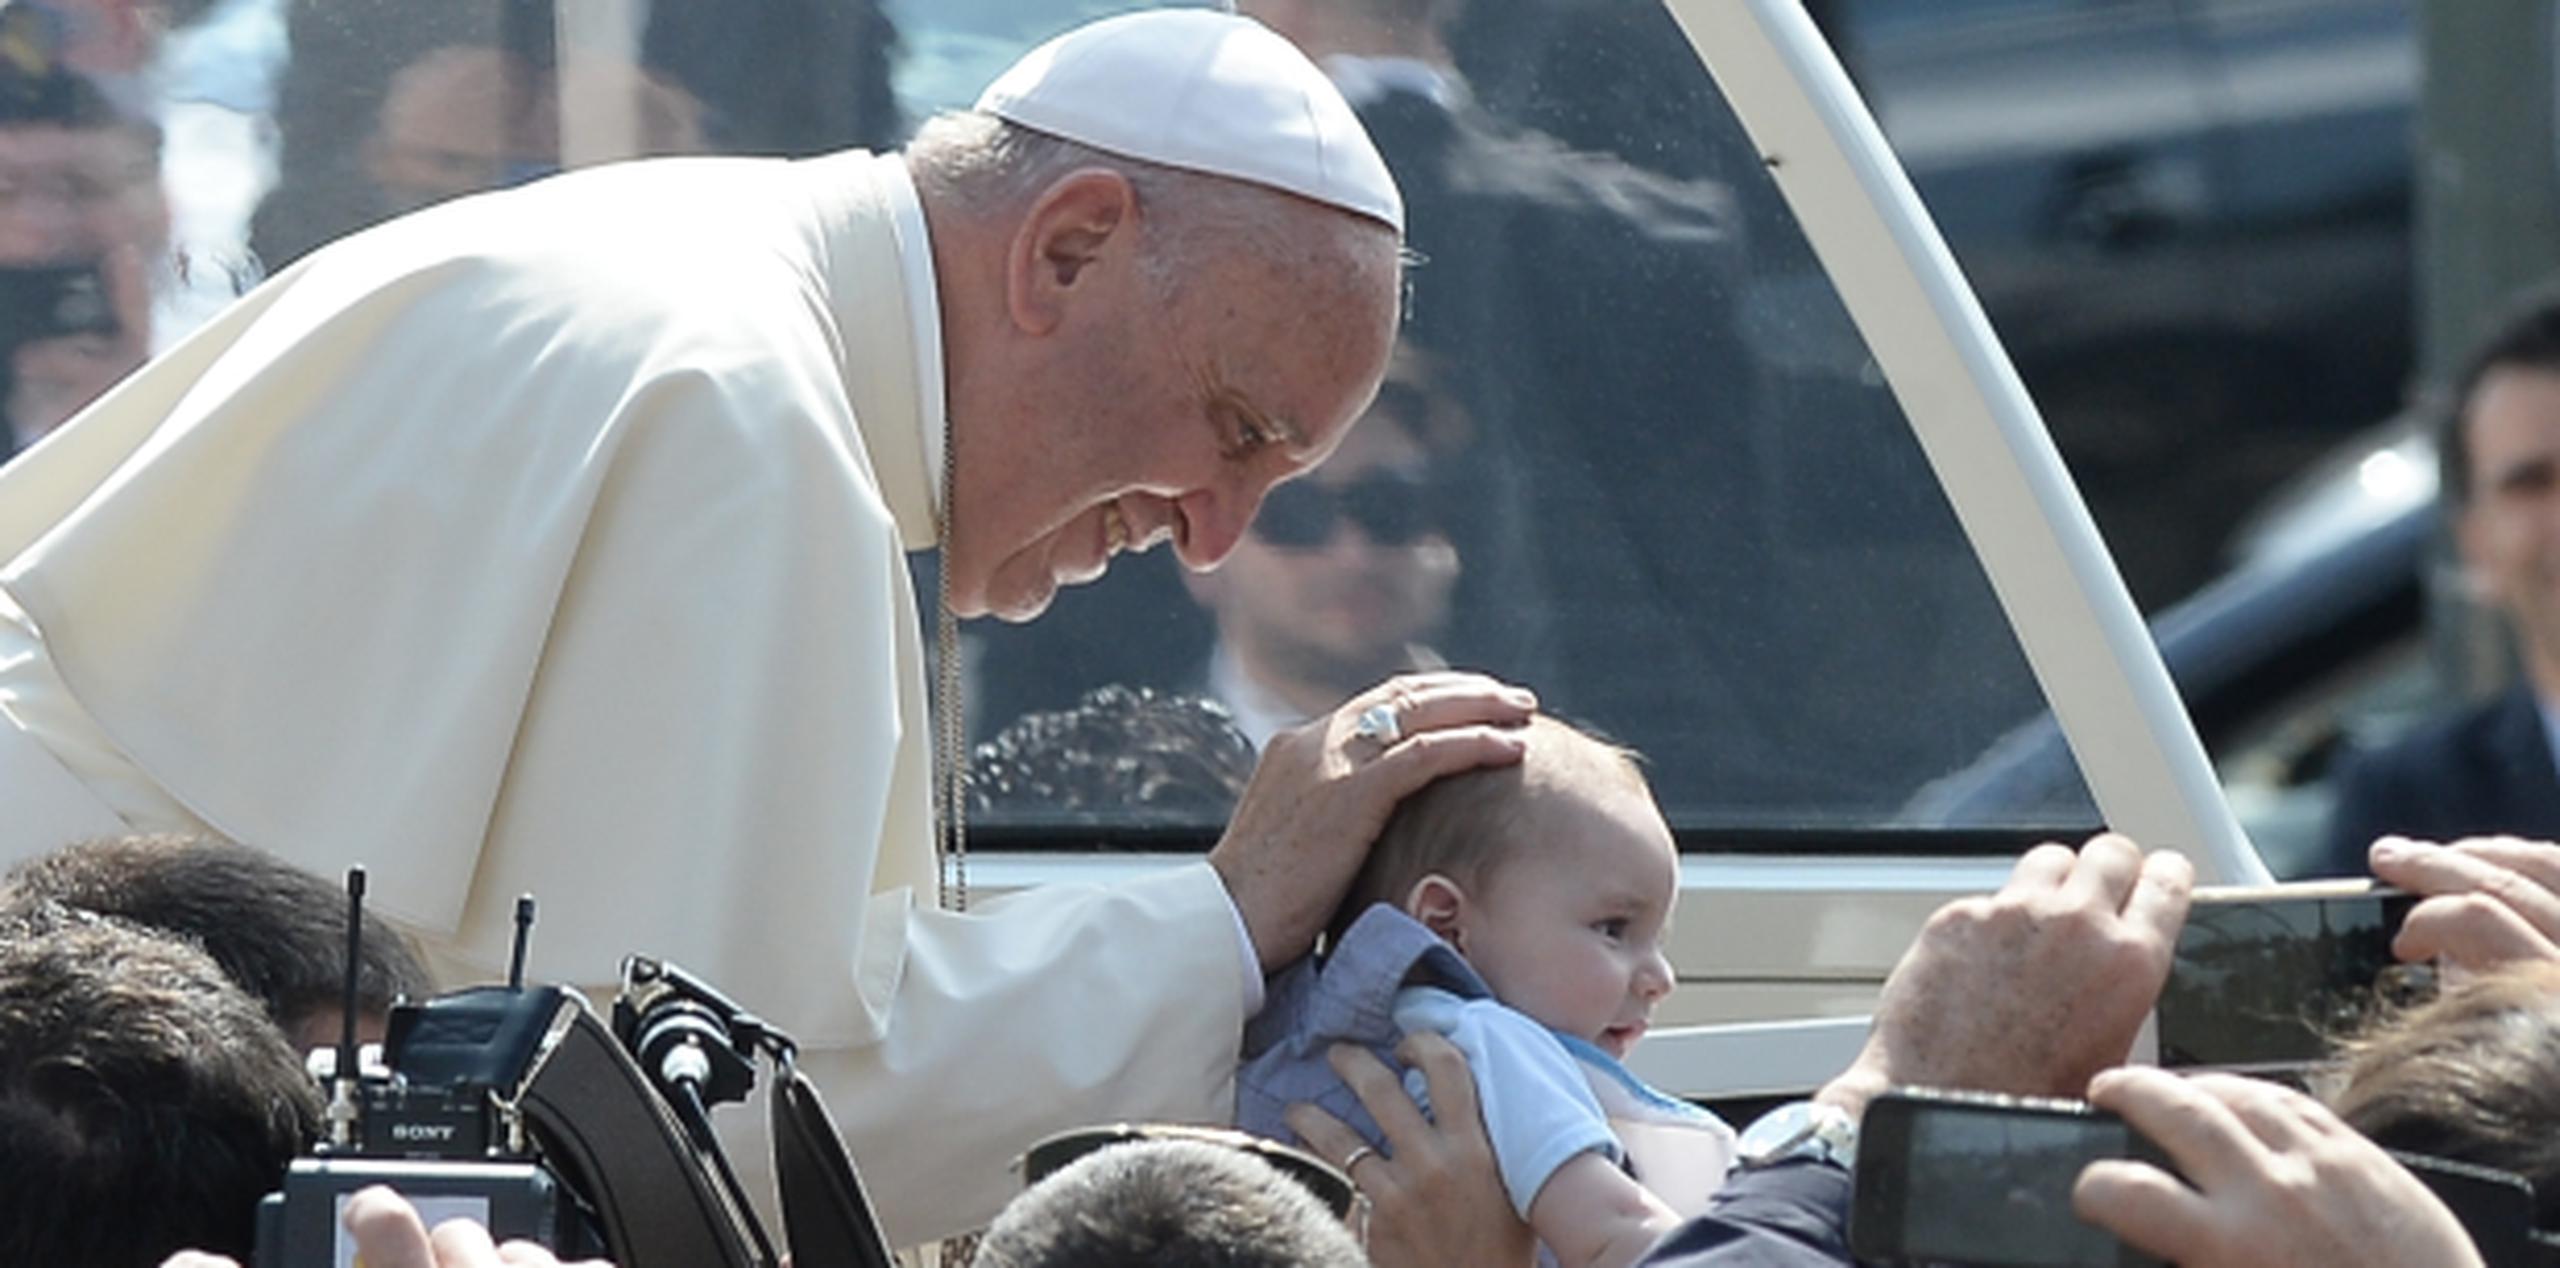 Previo a su mensaje a un grupo de jóvenes hoy en Italia, el sonriente papa Francisco acaricia a un bebé. (AP)